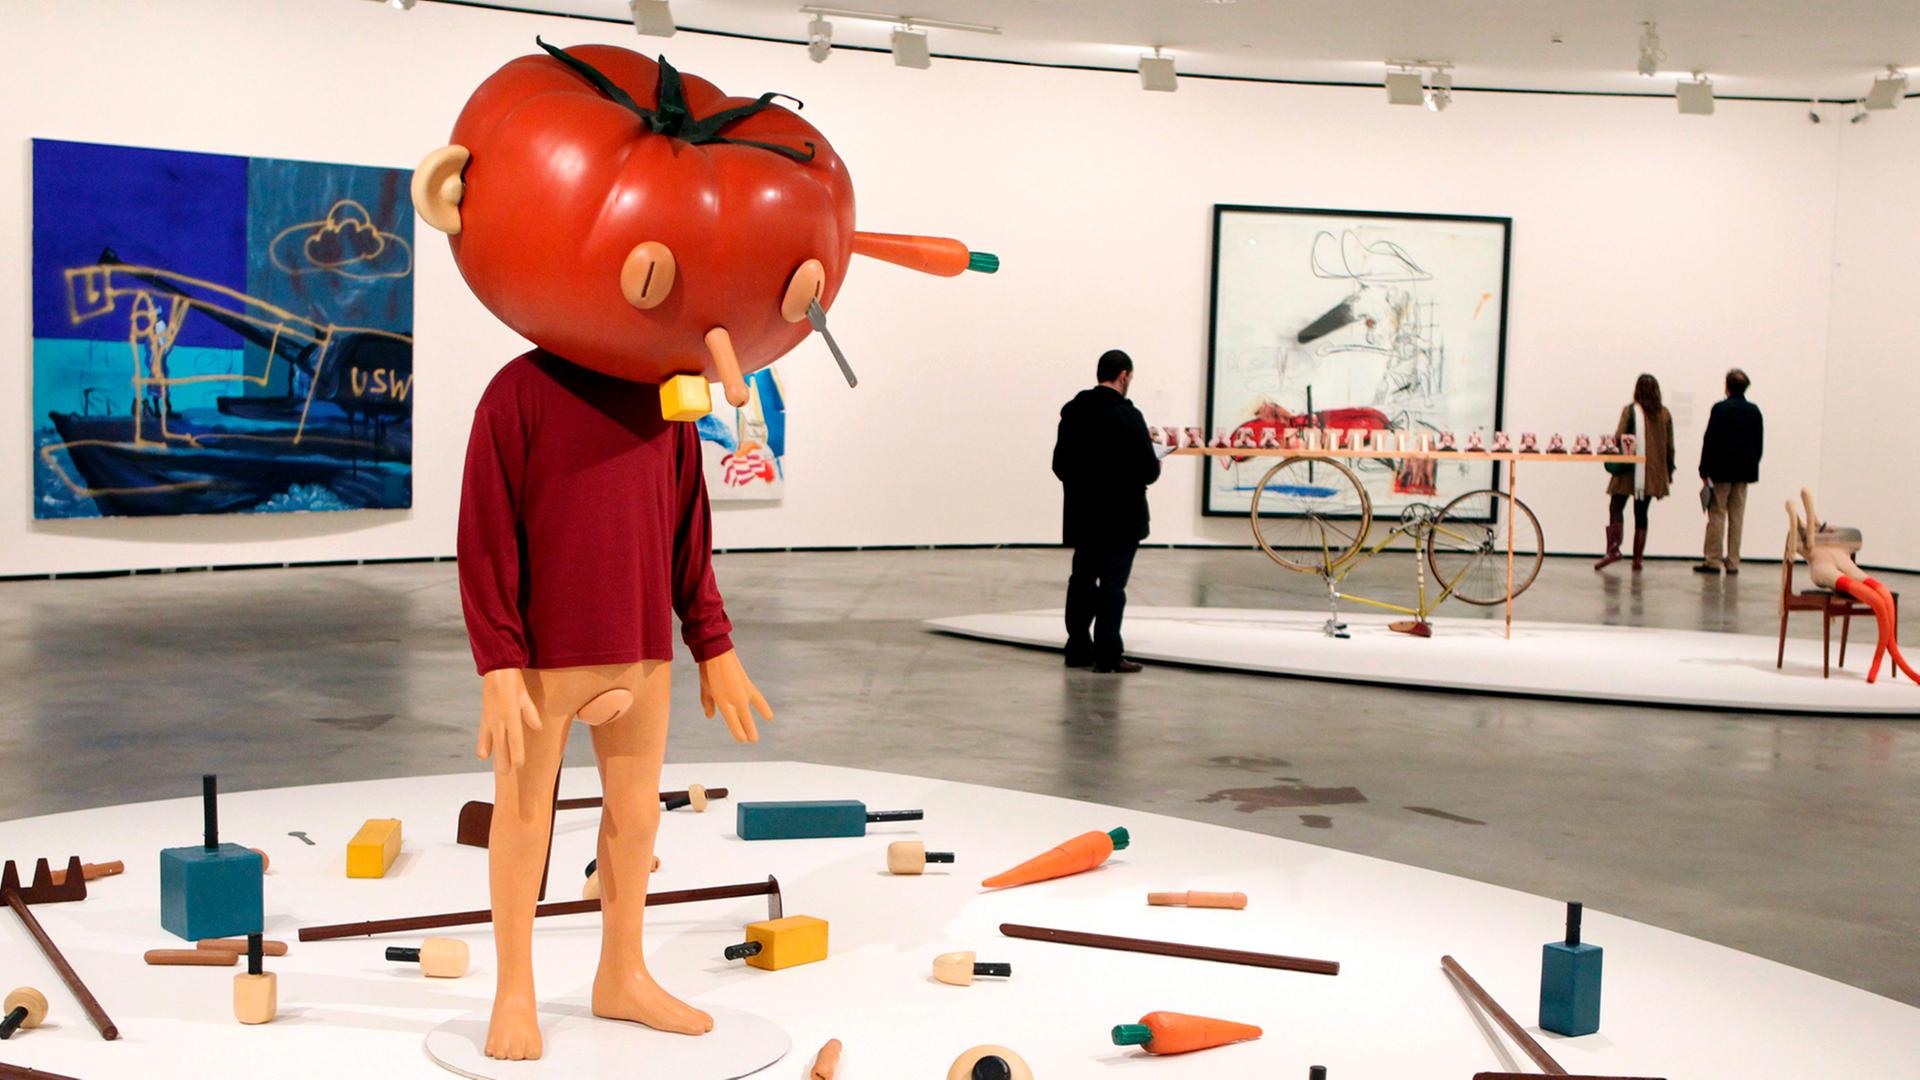 Die Installation "Tomato Head" des amerikanischen Künstlers Paul McCarthy, gezeigt in der Ausstellung "The Luminous nterval: The D. Daskalopoulos Collection" im Guggenheim Museum im spanischen Bilbao, aufgenommen 2011.